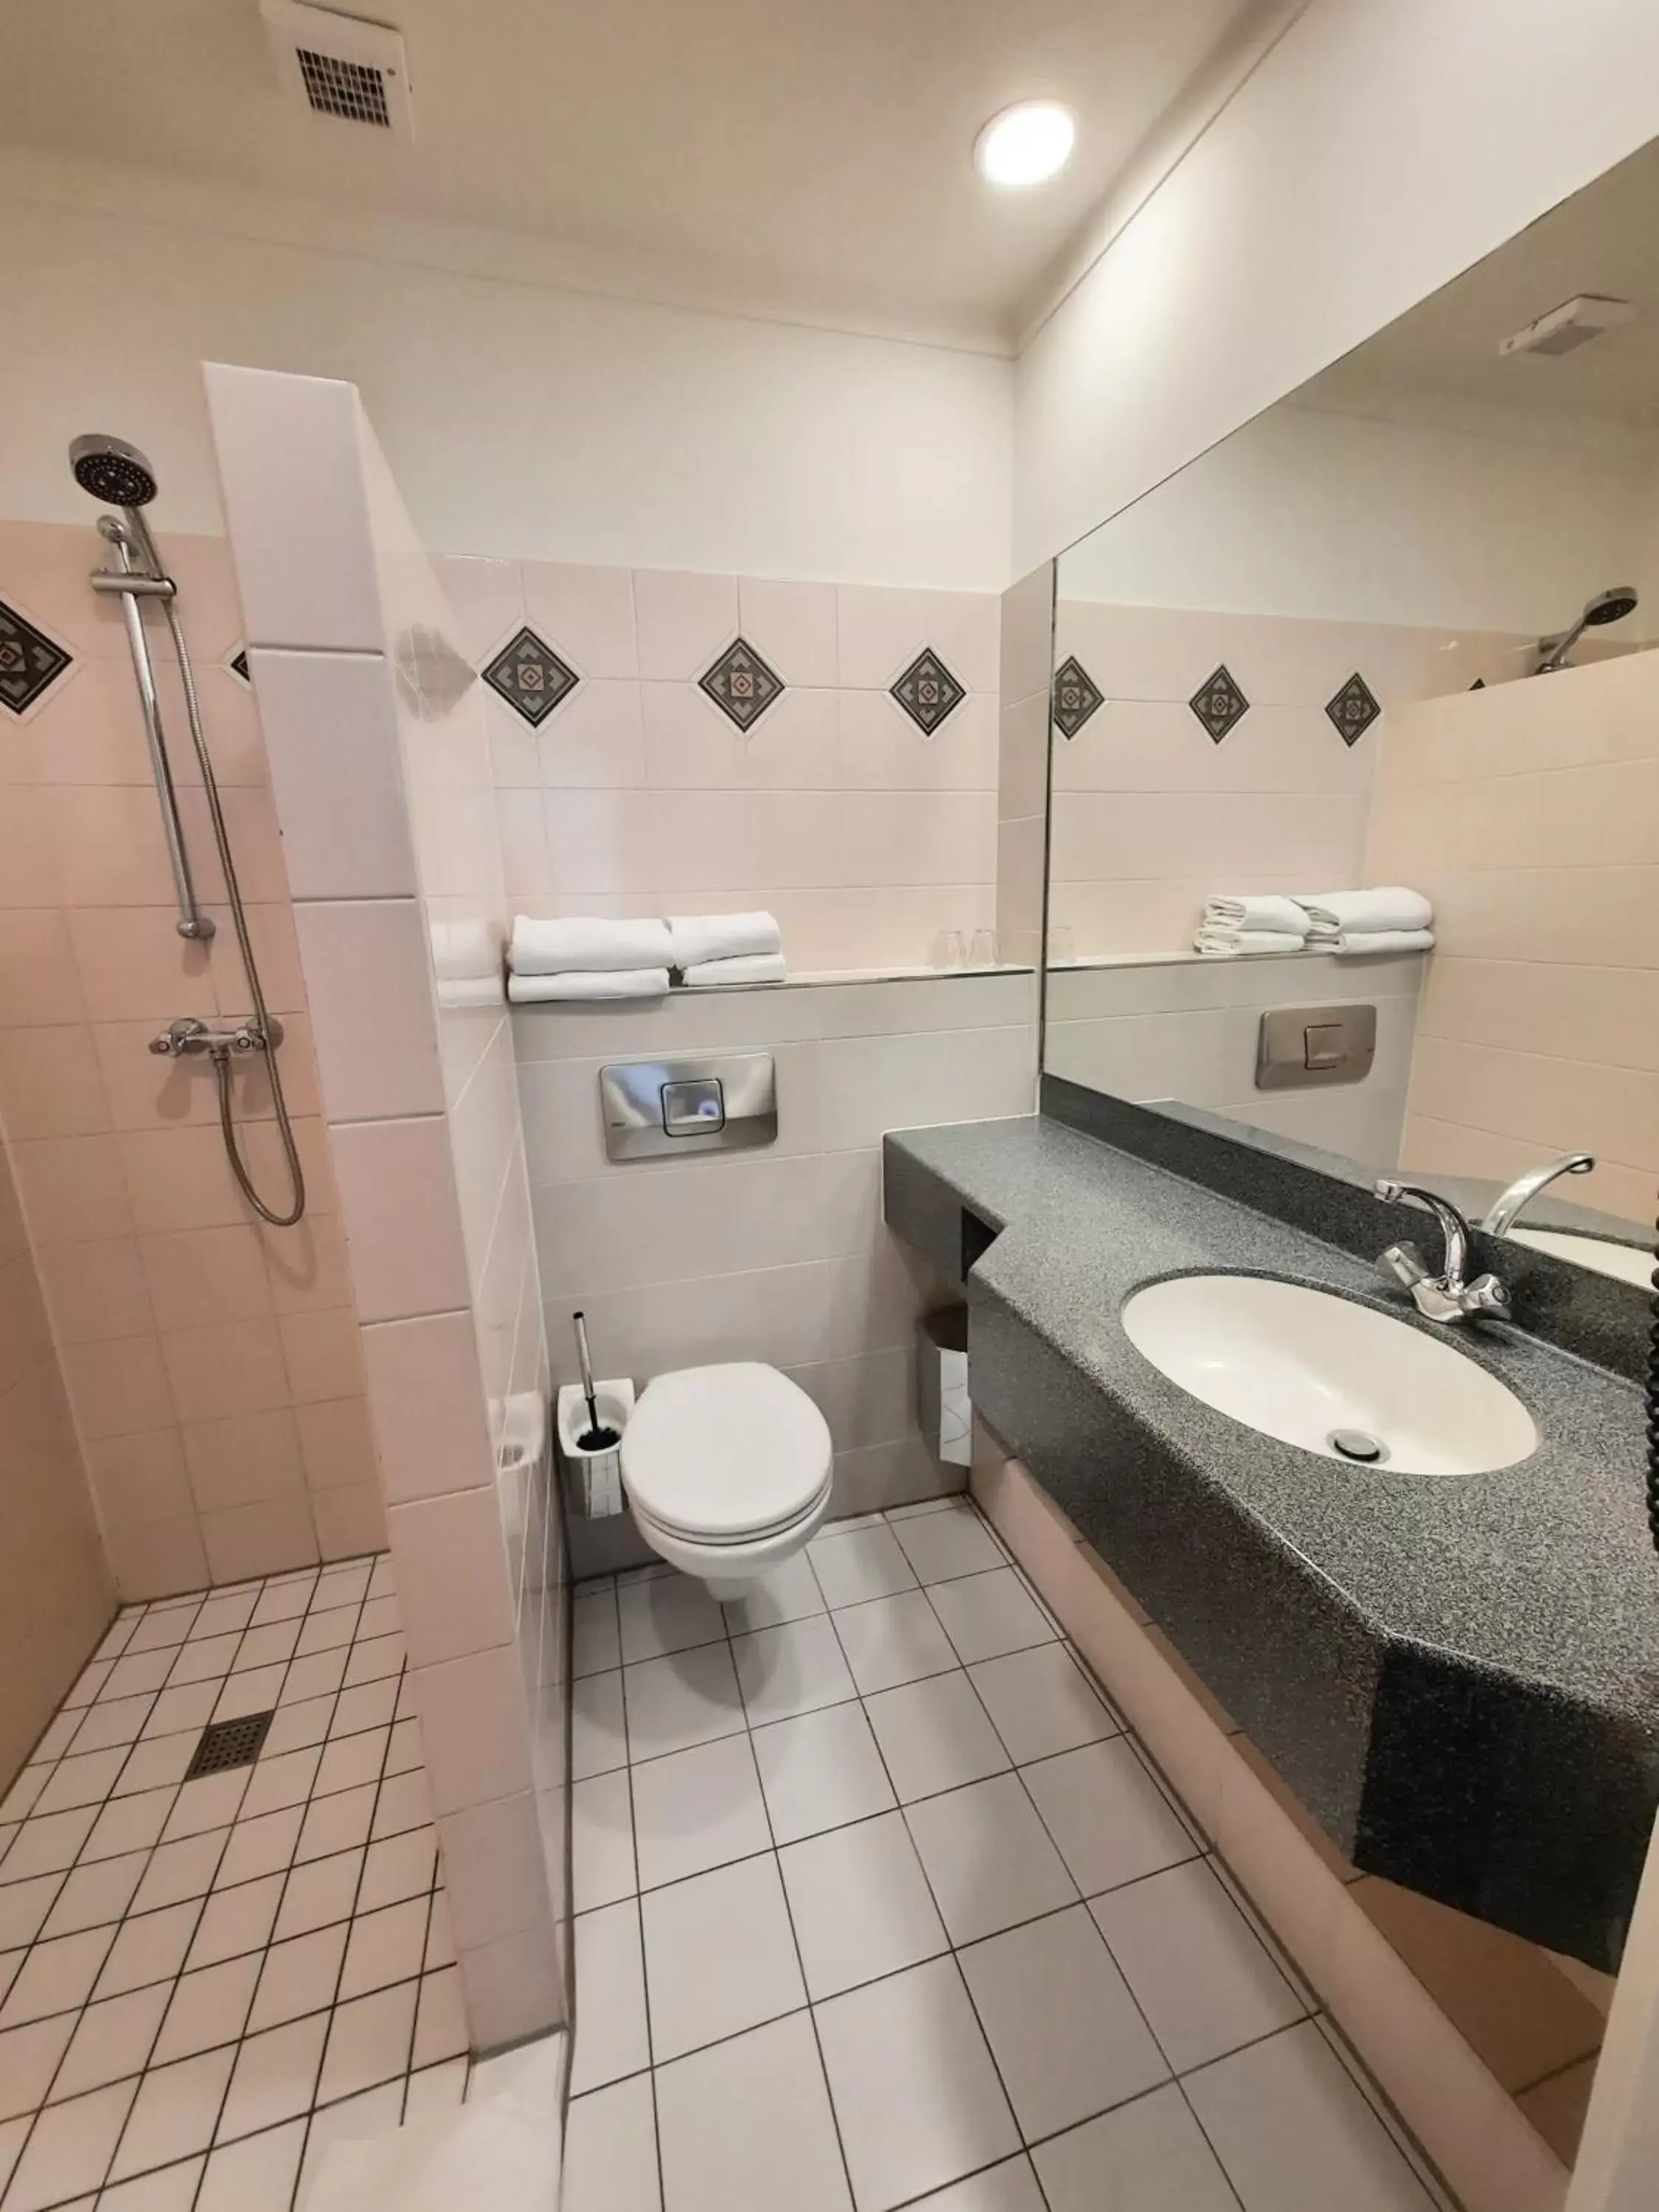 Bathroom in Hotel Washington